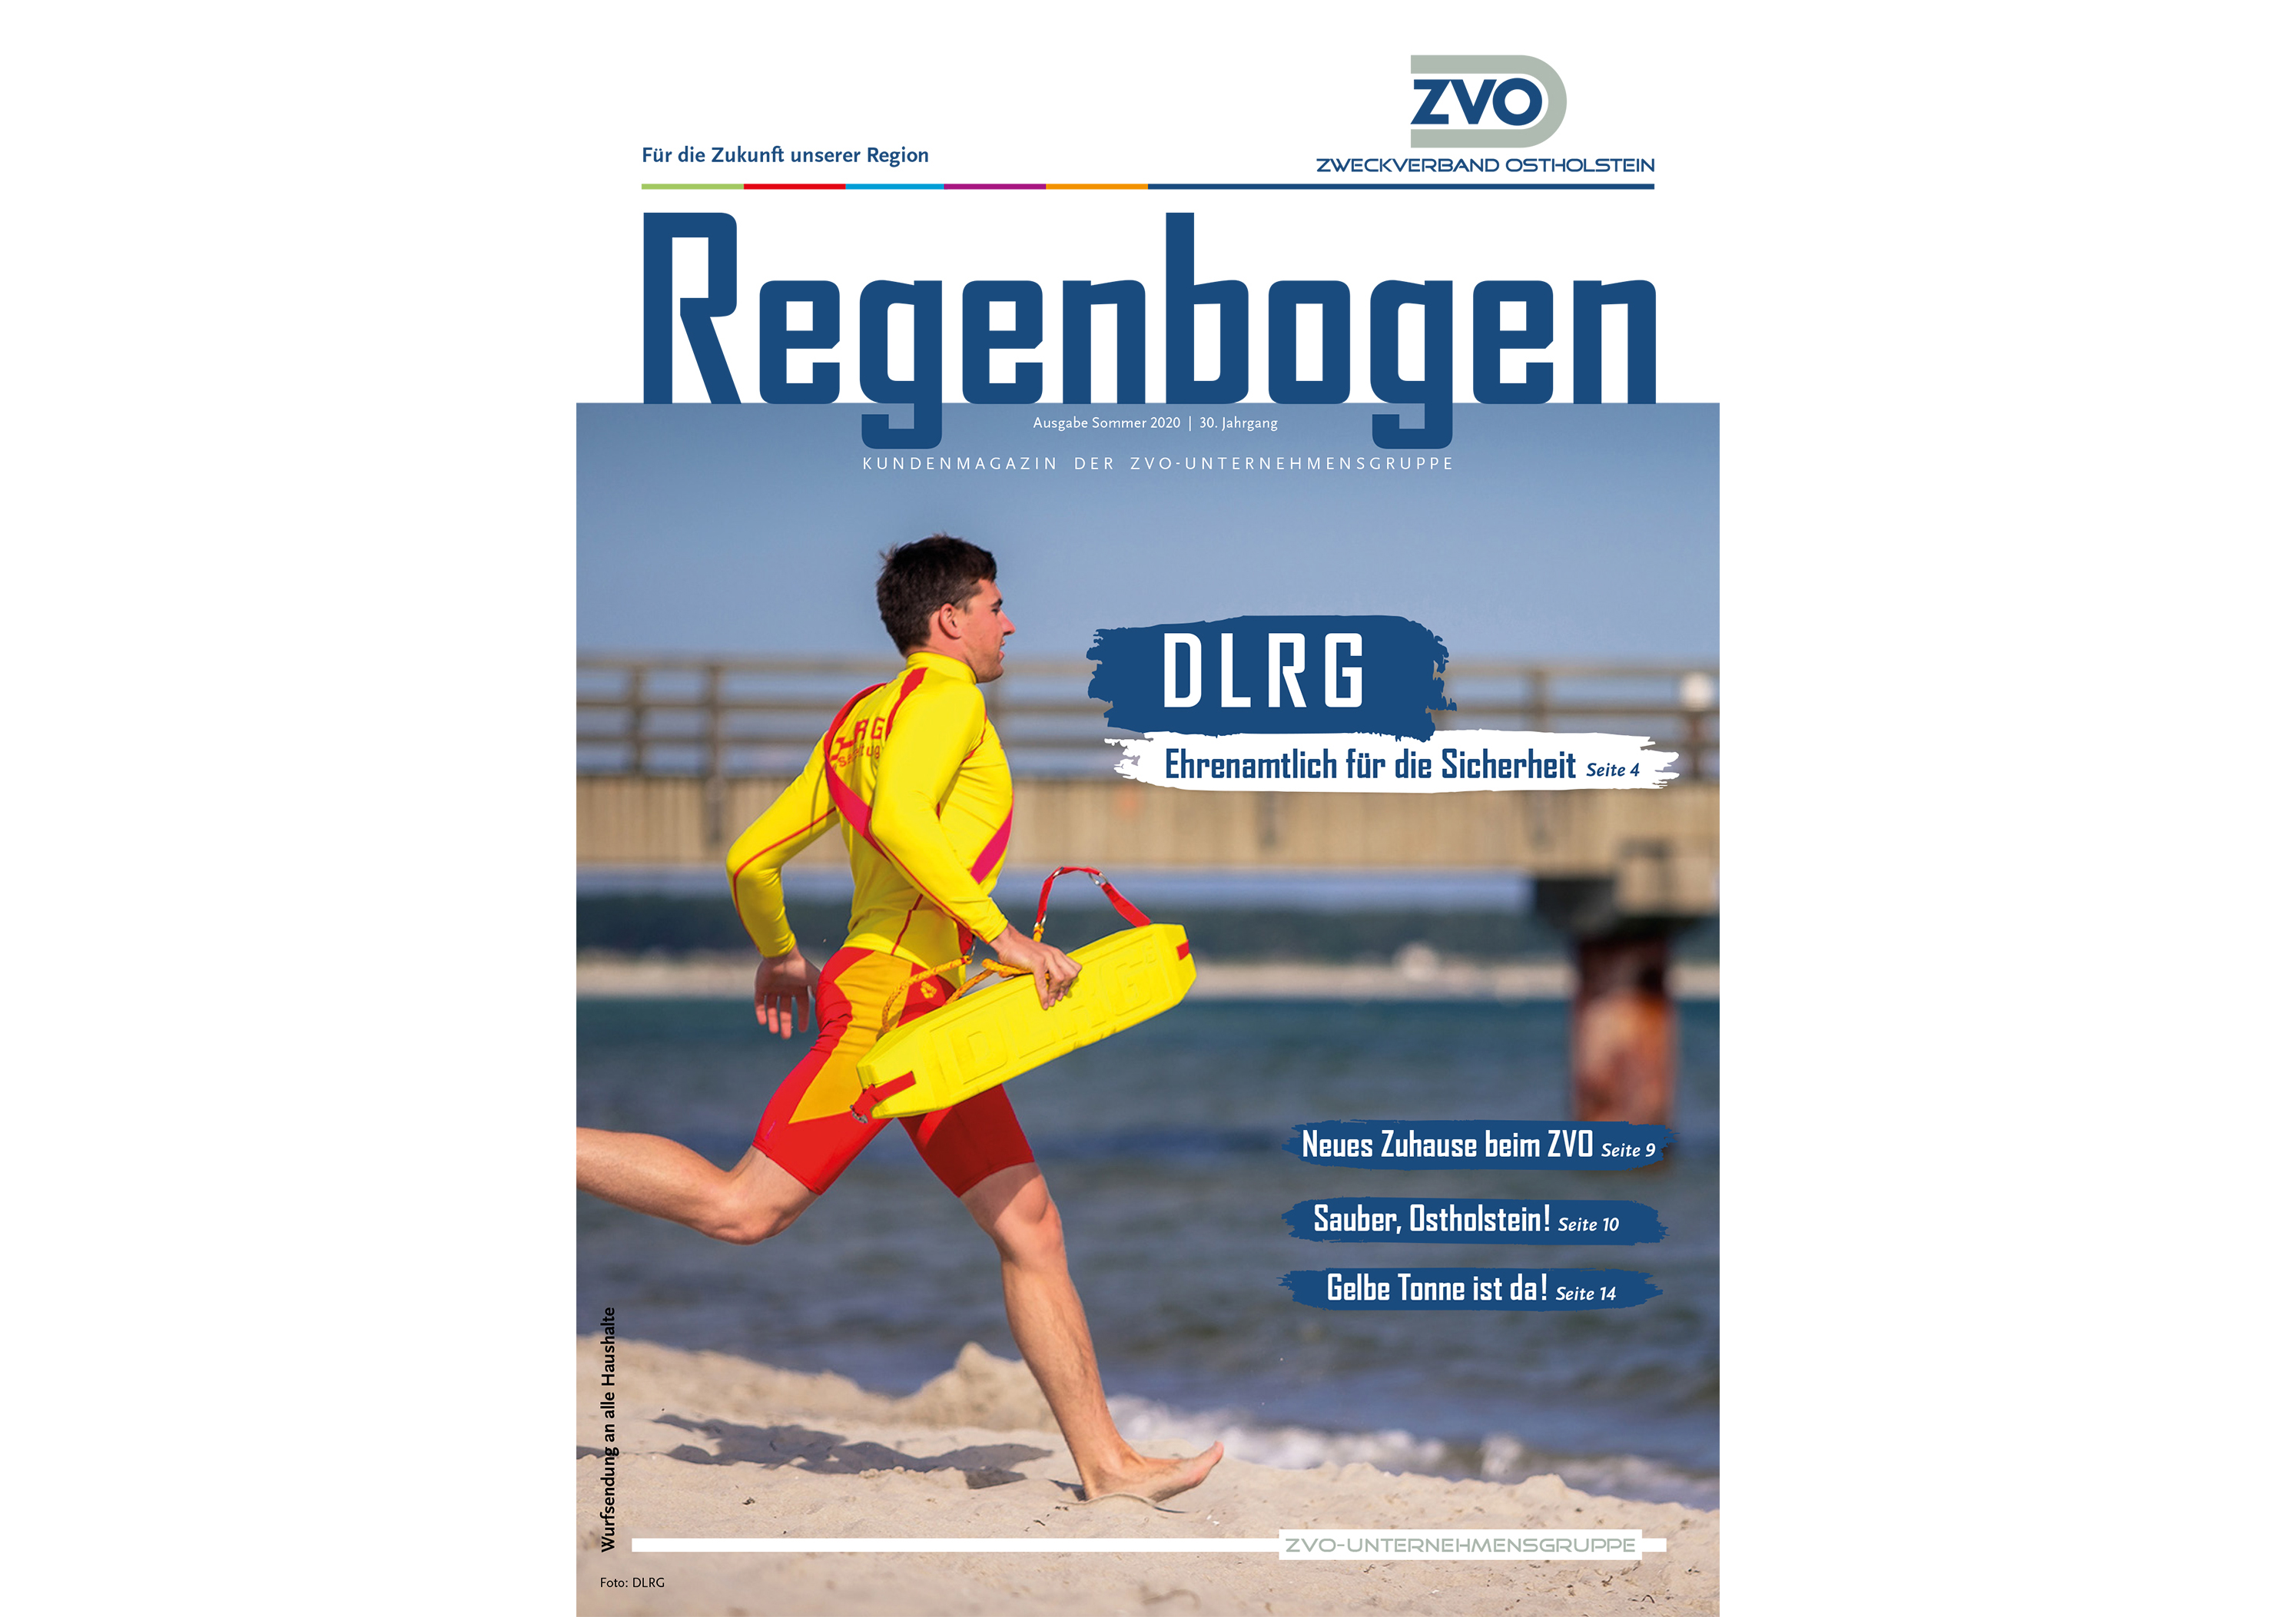 Titelbild "Regenborgen" von der zweiten Ausgabe im Sommer 2020